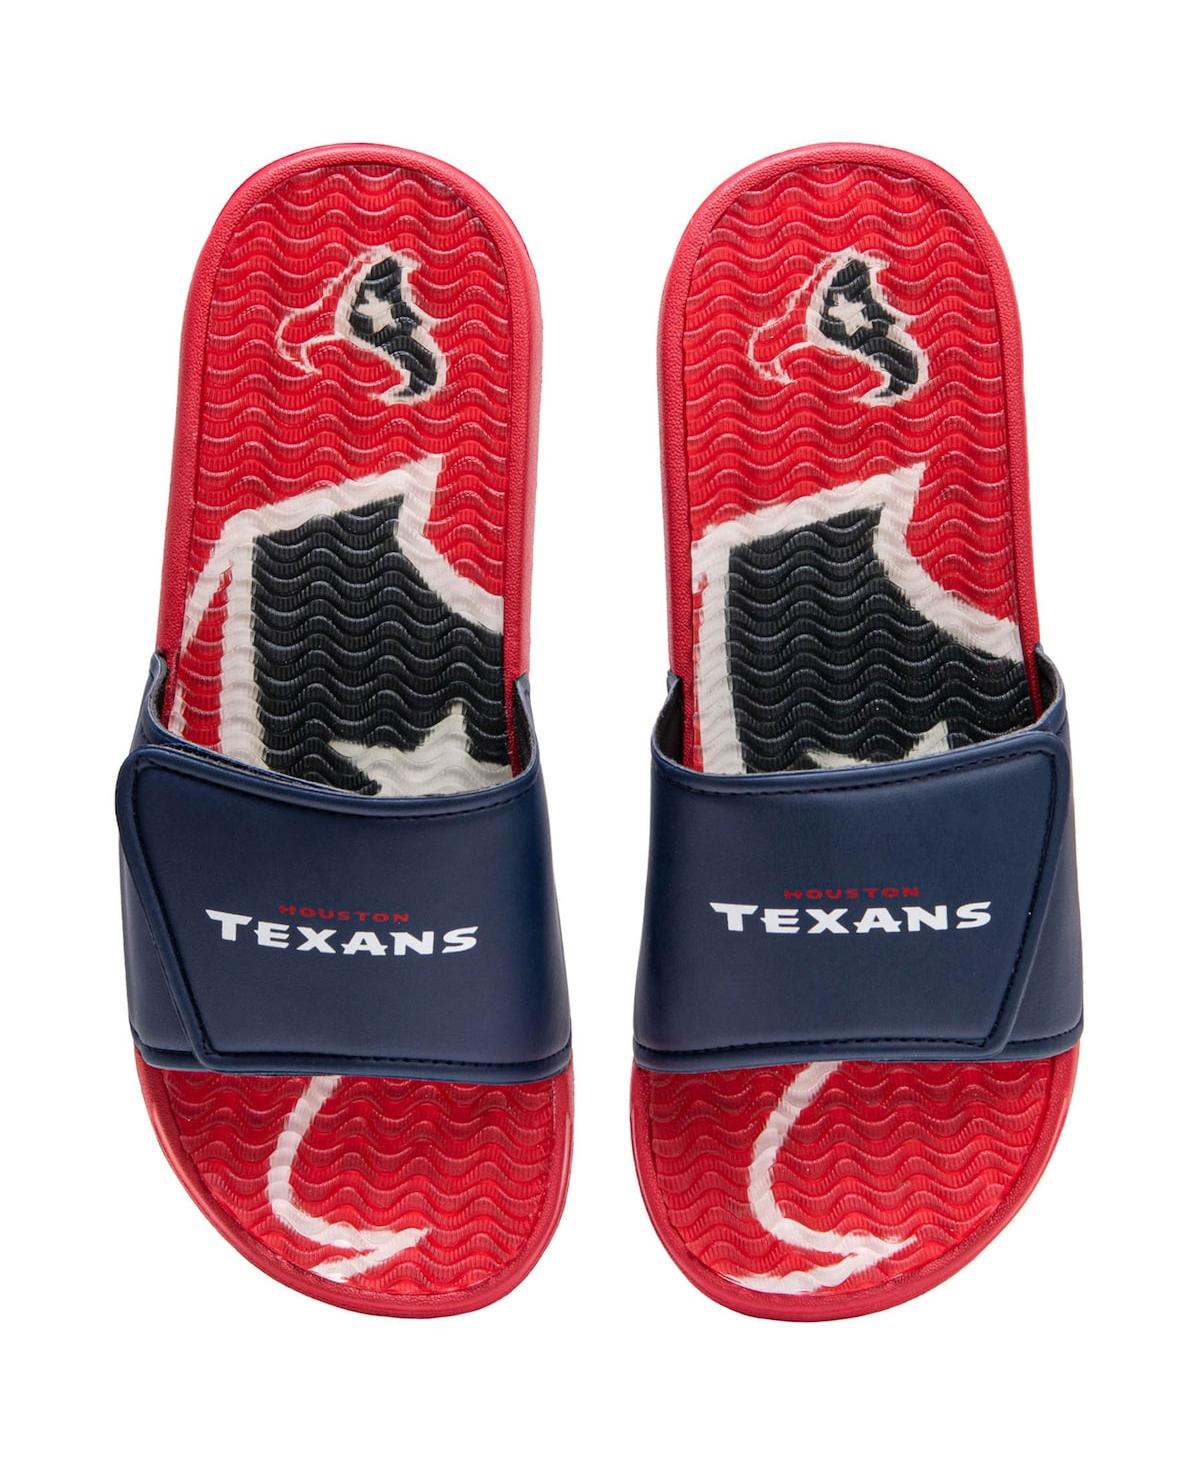 Men's Foco Houston Texans Wordmark Gel Slide Sandals - Navy